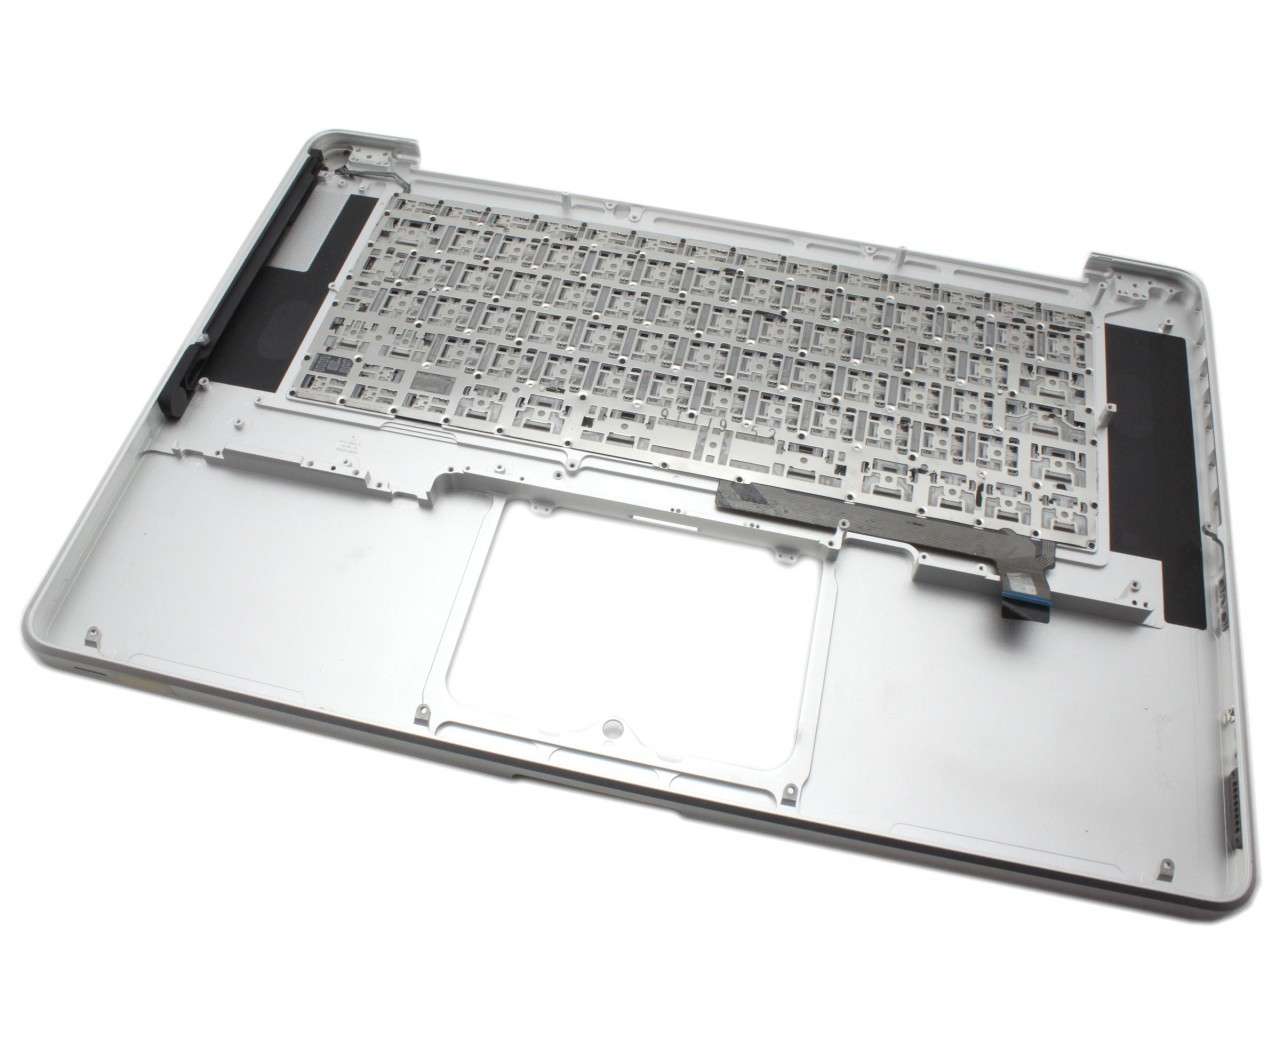 Tastatura Apple MacBook Pro 15 MB986 Neagra cu Palmrest Argintiu Refurbished Apple Apple